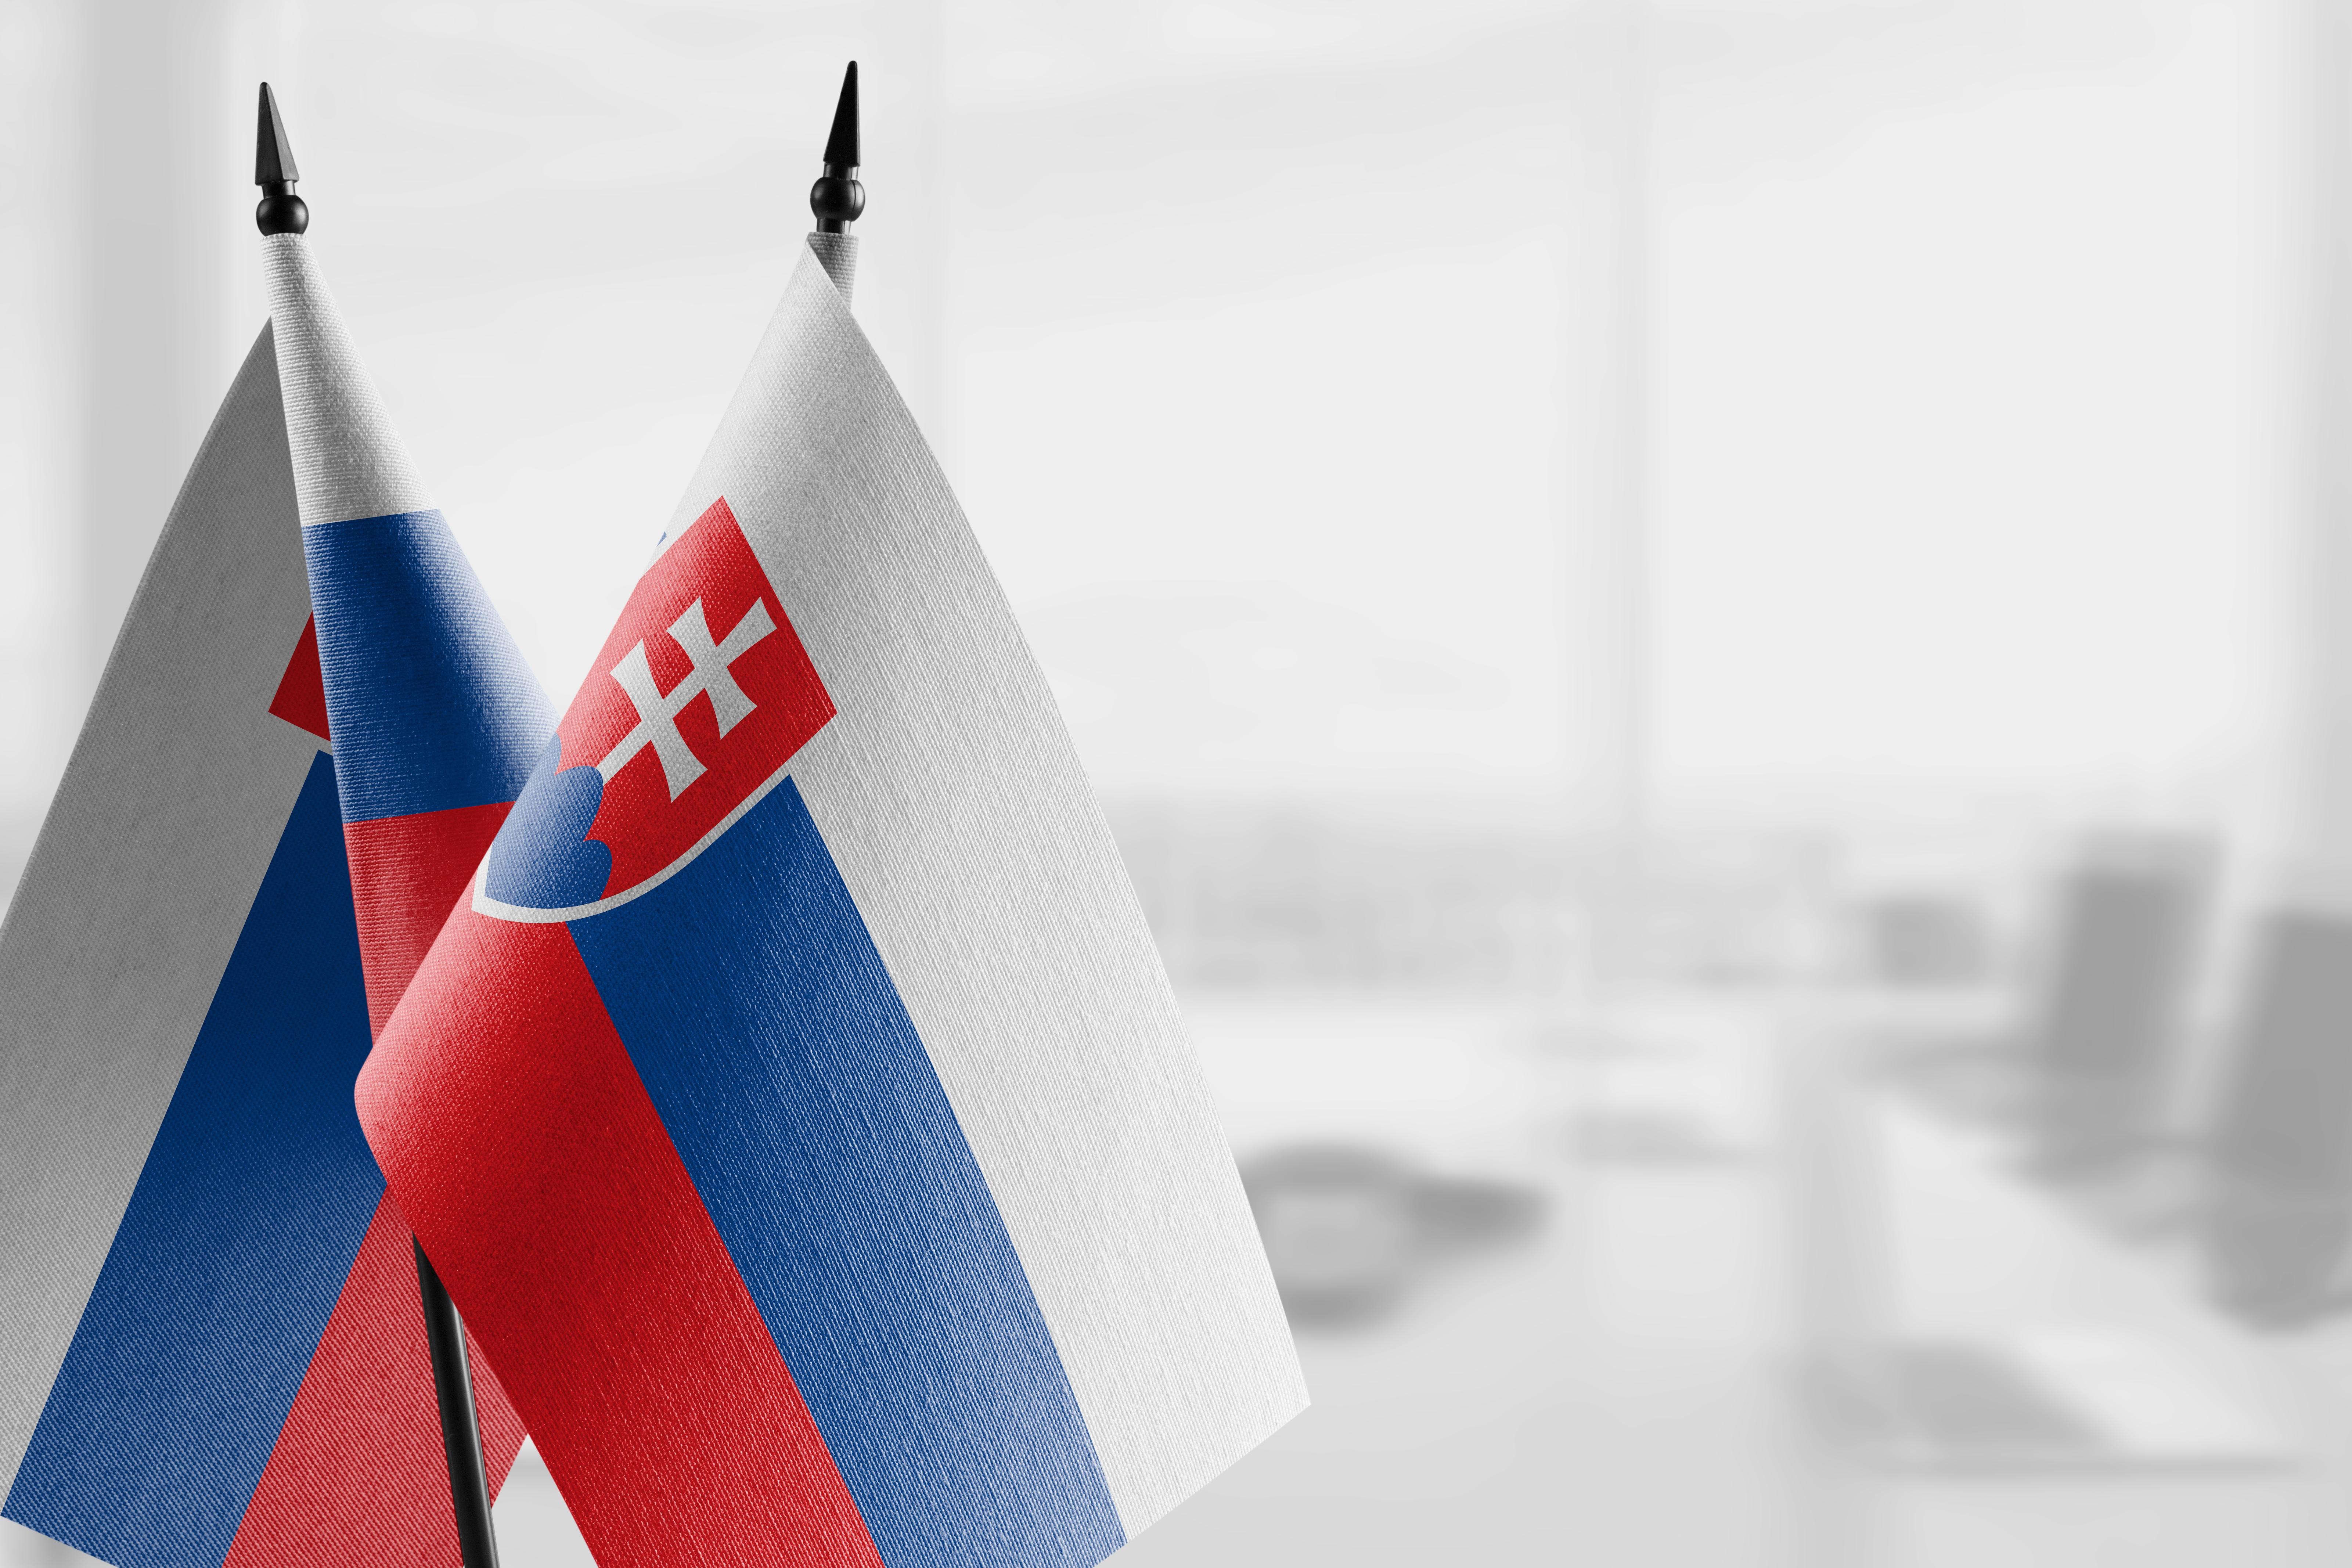 Flags symbolizing Slovak citizenship